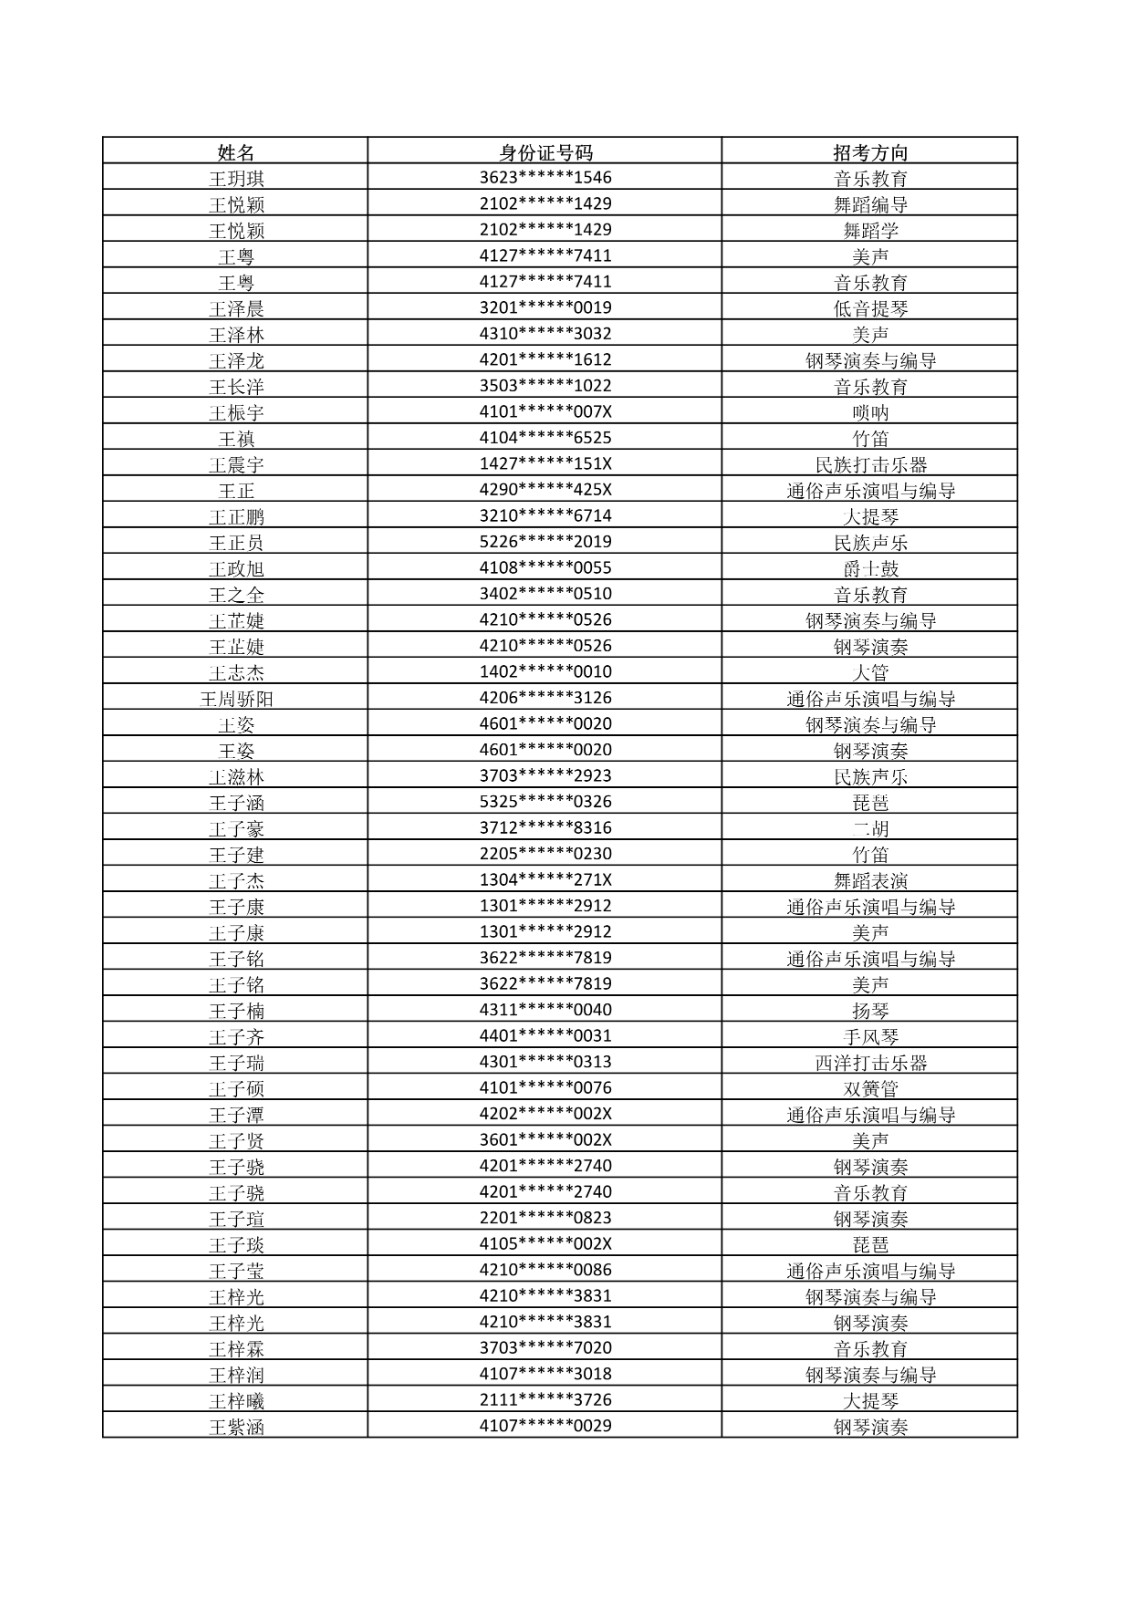 2021年武汉音乐学院普通本科招生考试复试名单及有关事项公告